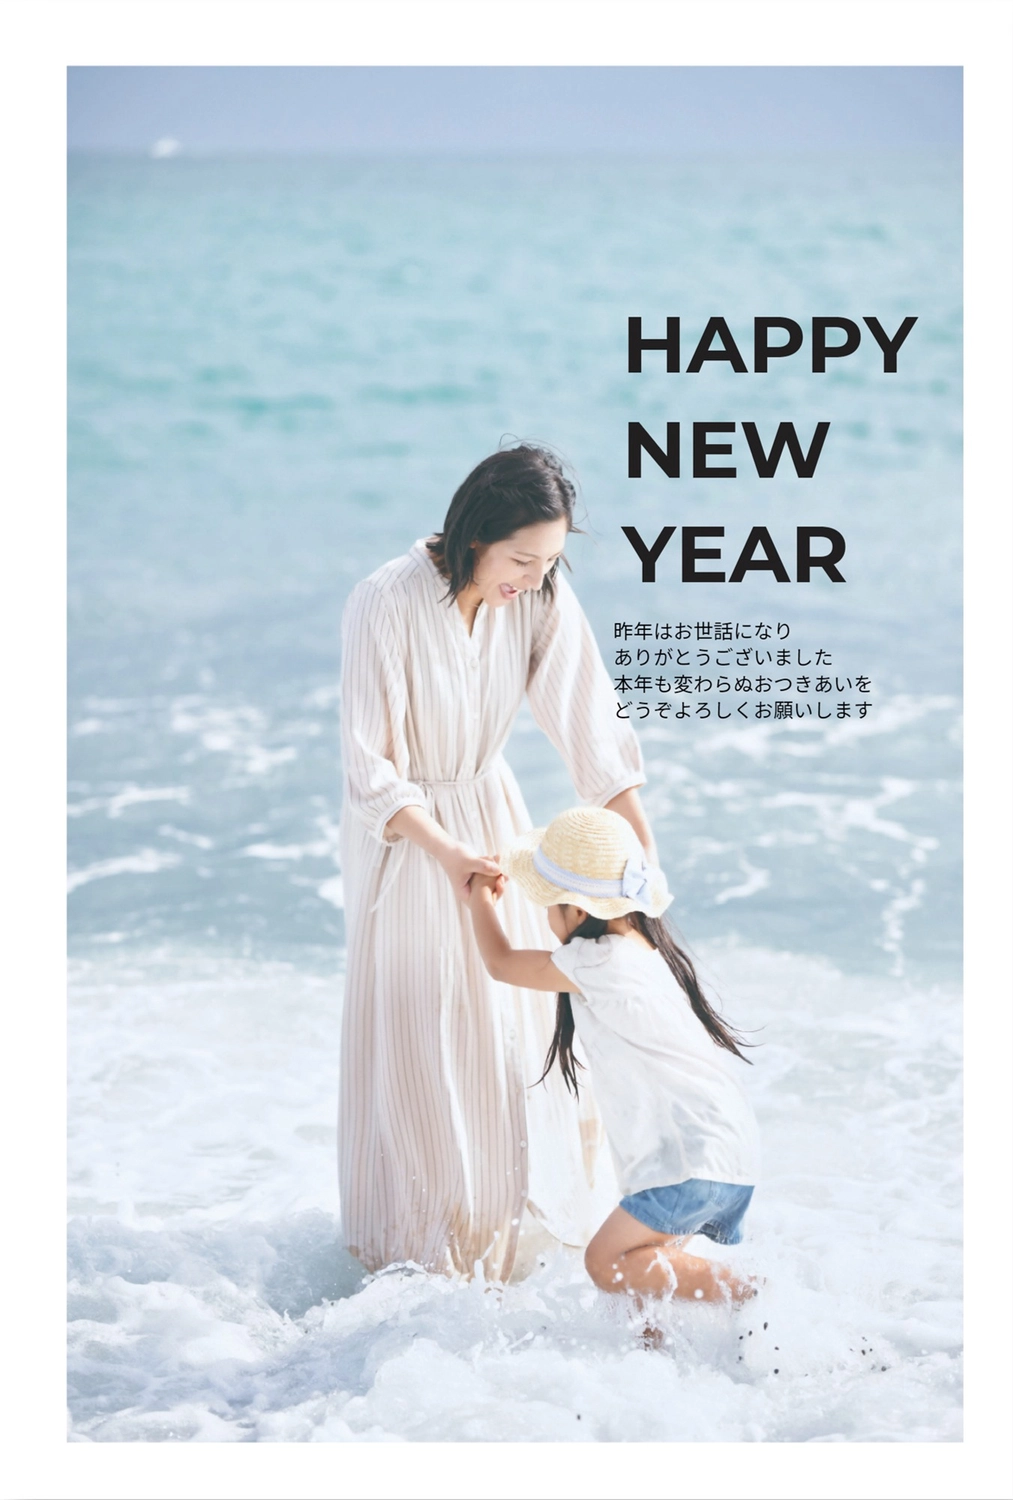 写真フレーム年賀状　全面写真の上にHAPPY NEW YEAR, Postcard, full frame, Full photo, New Year Card template